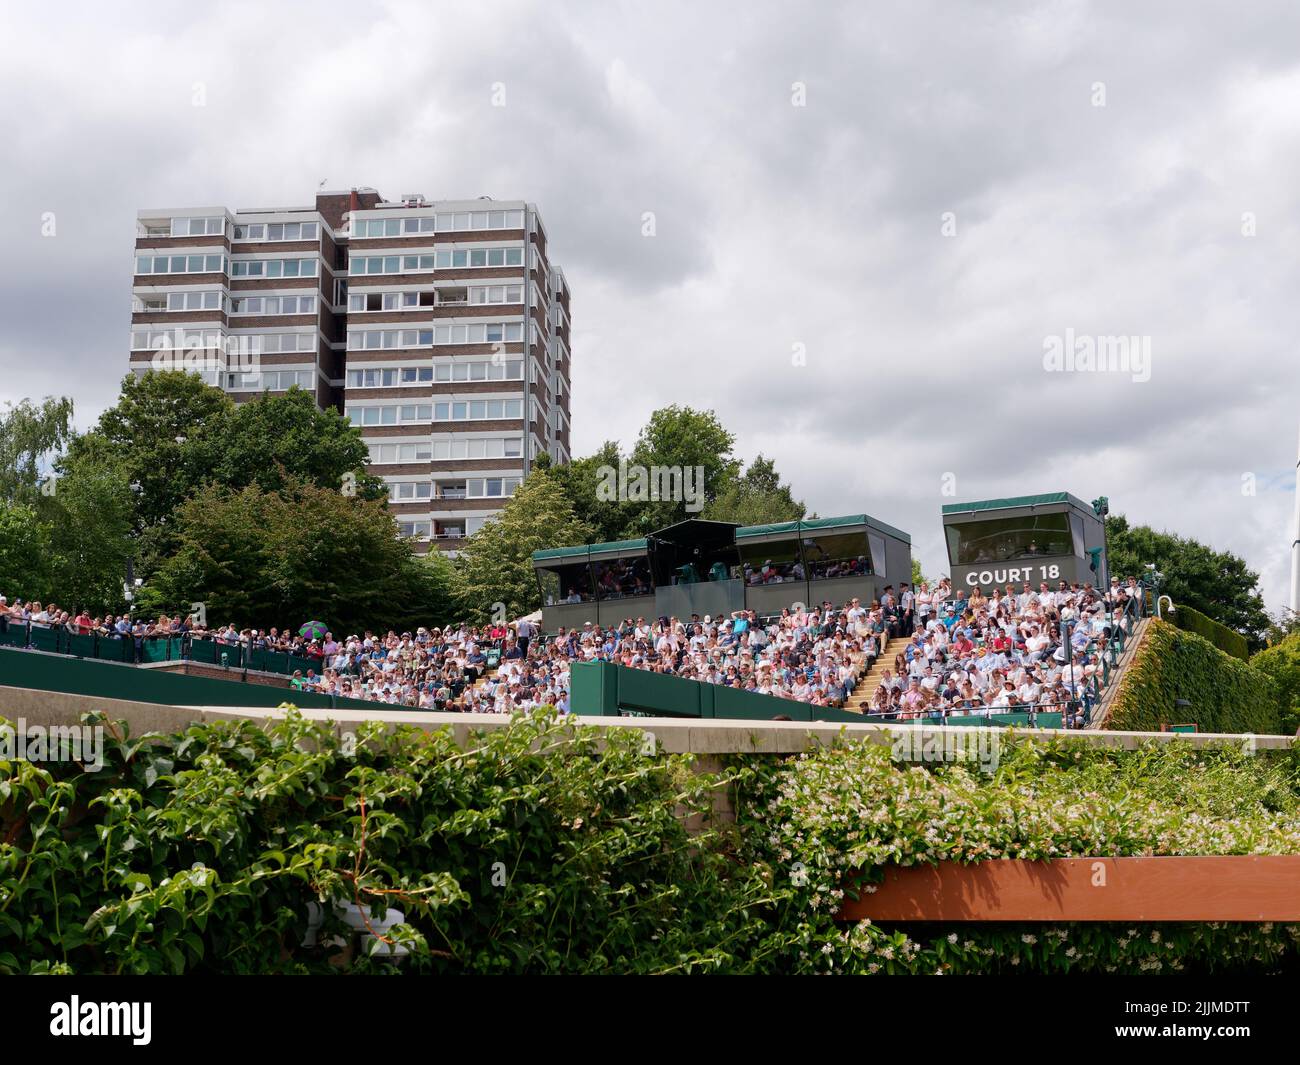 Wimbledon, Greater London, Inghilterra, luglio 02 2022: Wimbledon Tennis Championship. Cortile esterno pieno di spettatori e un vicino blocco di appartamenti Foto Stock